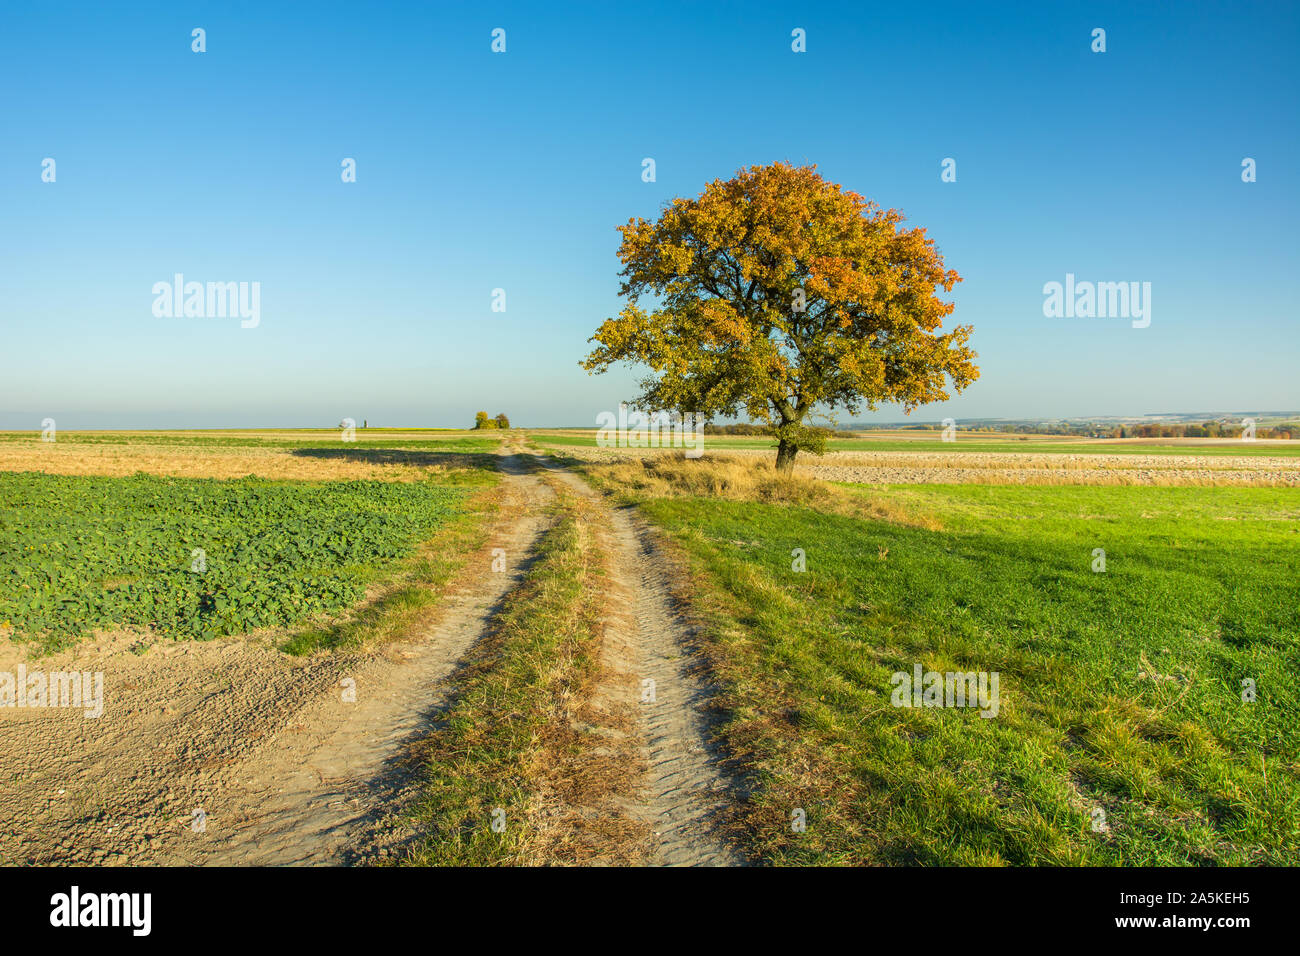 Ländliche Straße durch Felder, einsame Herbst Baum, Horizont und blauer Himmel Stockfoto